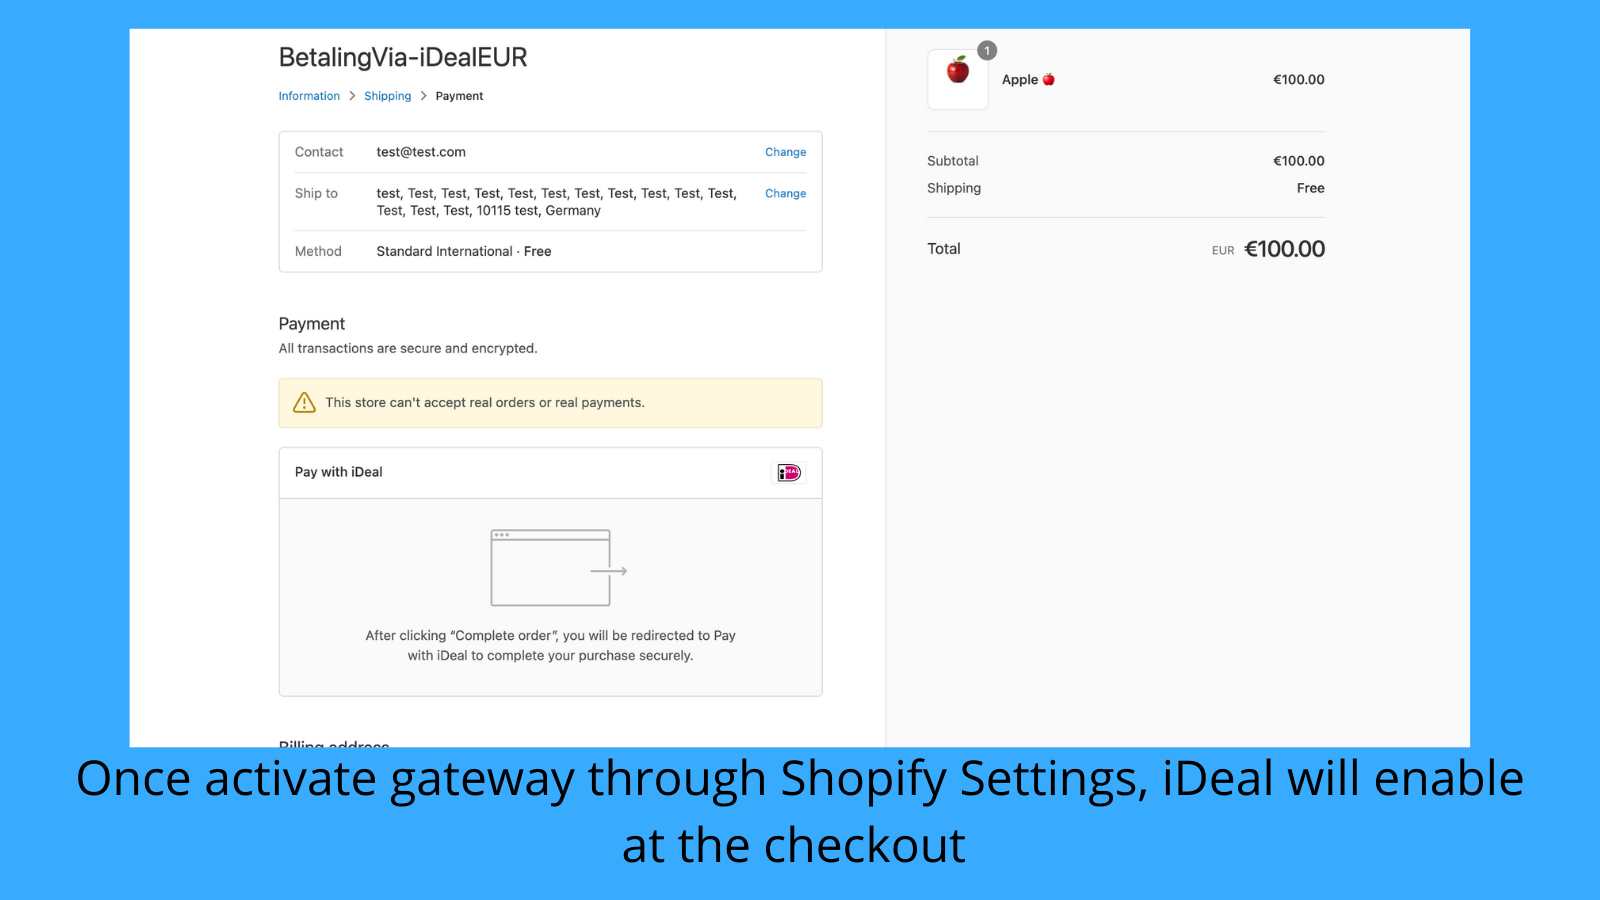 Ative o iDeal através das configurações de pagamento do Shopify.